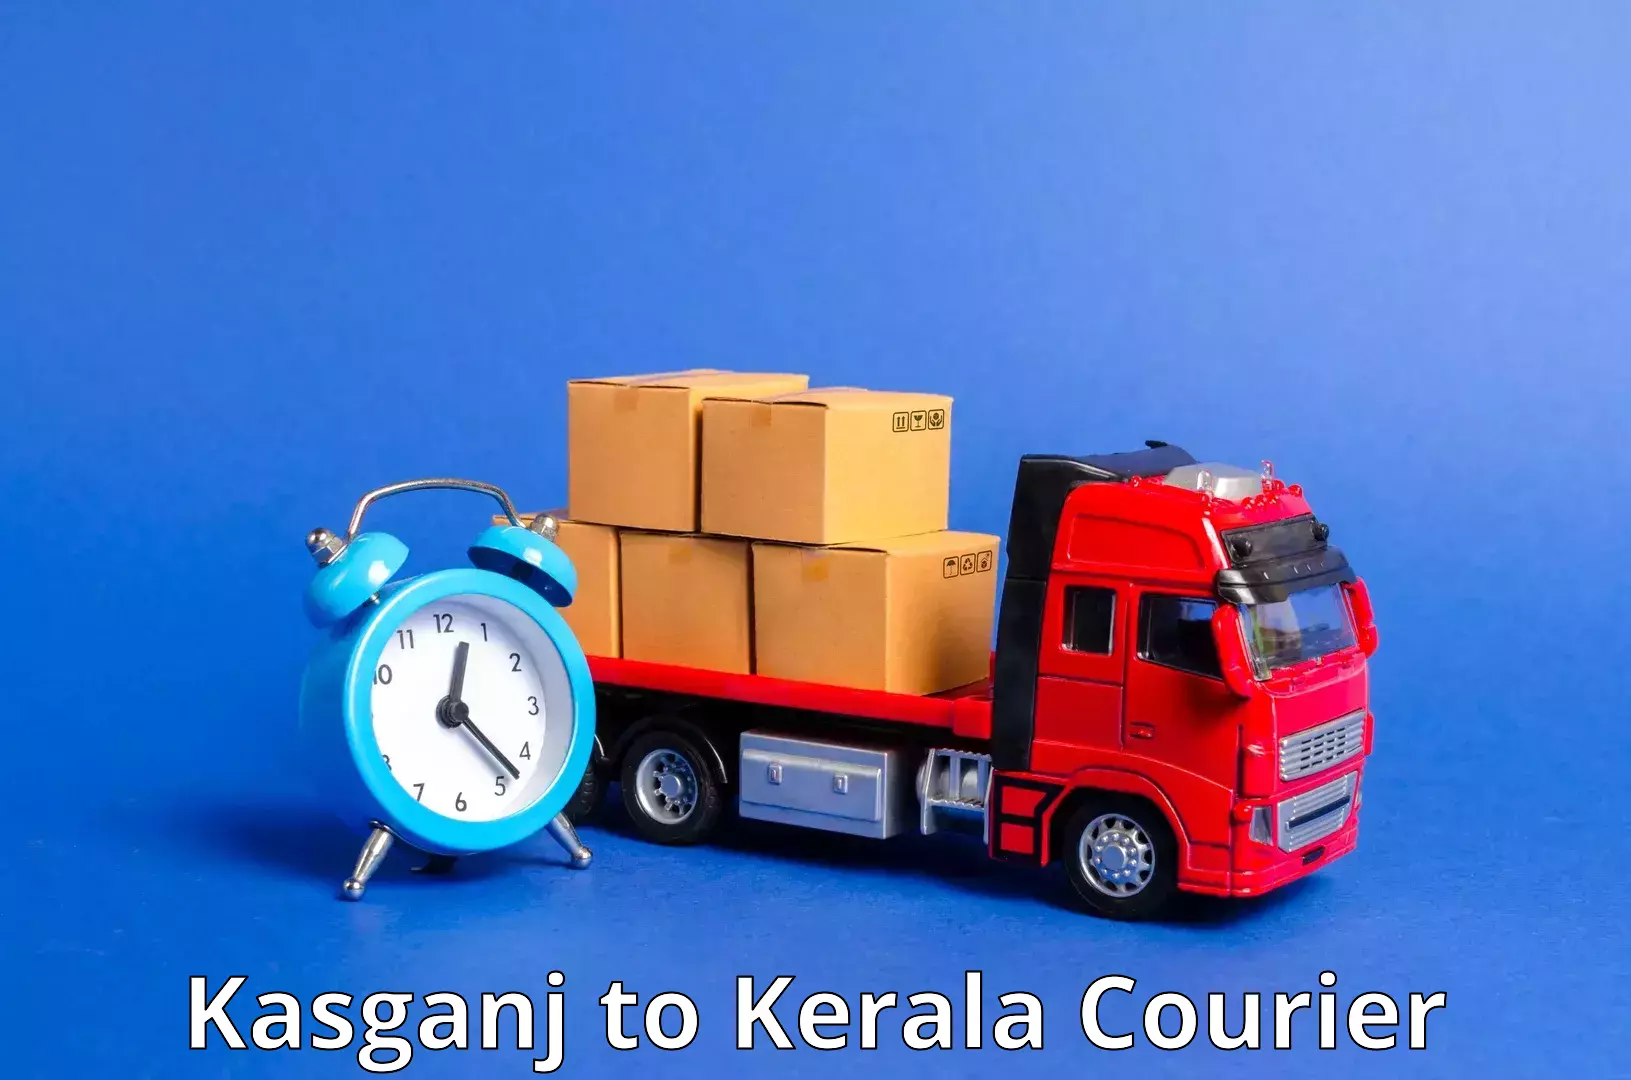 Quick booking process Kasganj to Kattappana